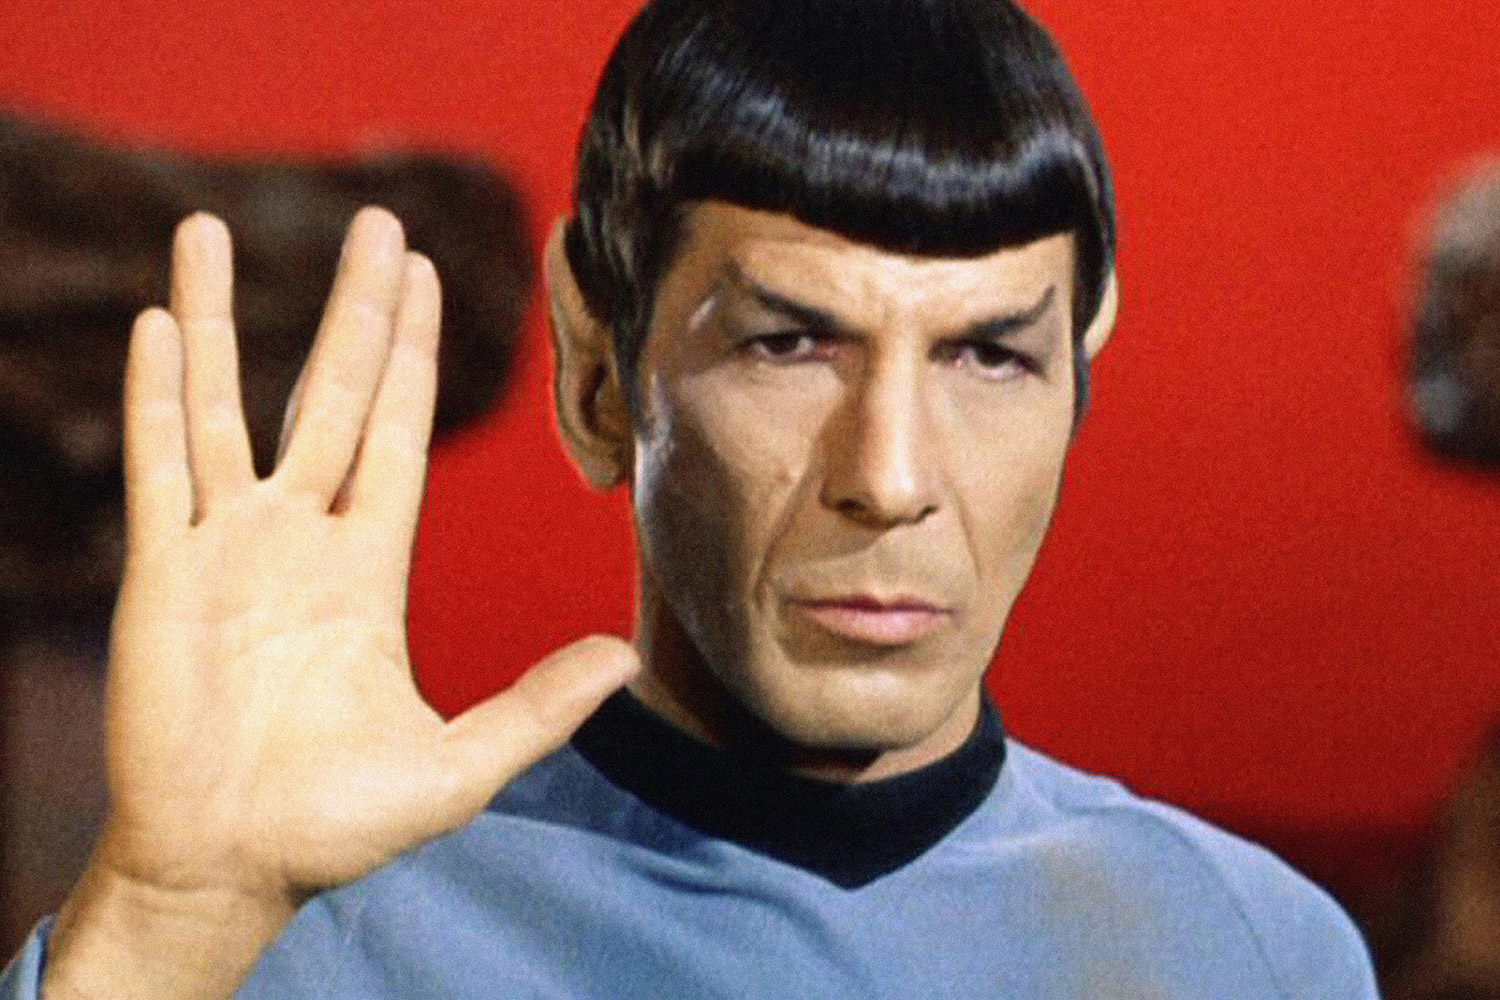 image of Mr. Spock from Star Trek